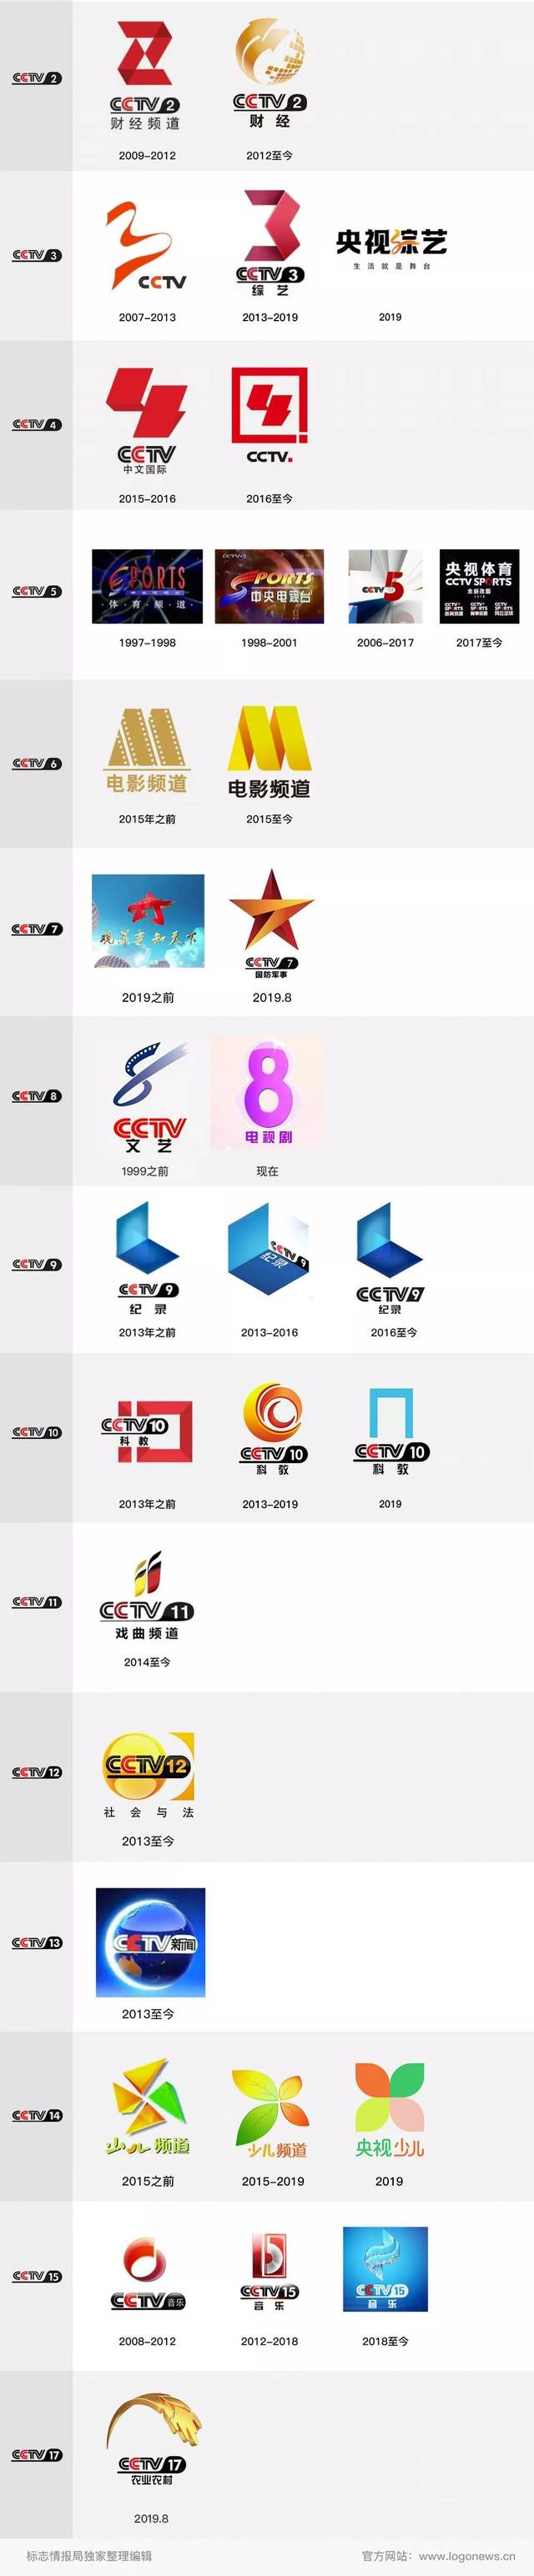 2013年6月1日开始,综艺频道红色的折纸版数字「3」logo开始出现在该